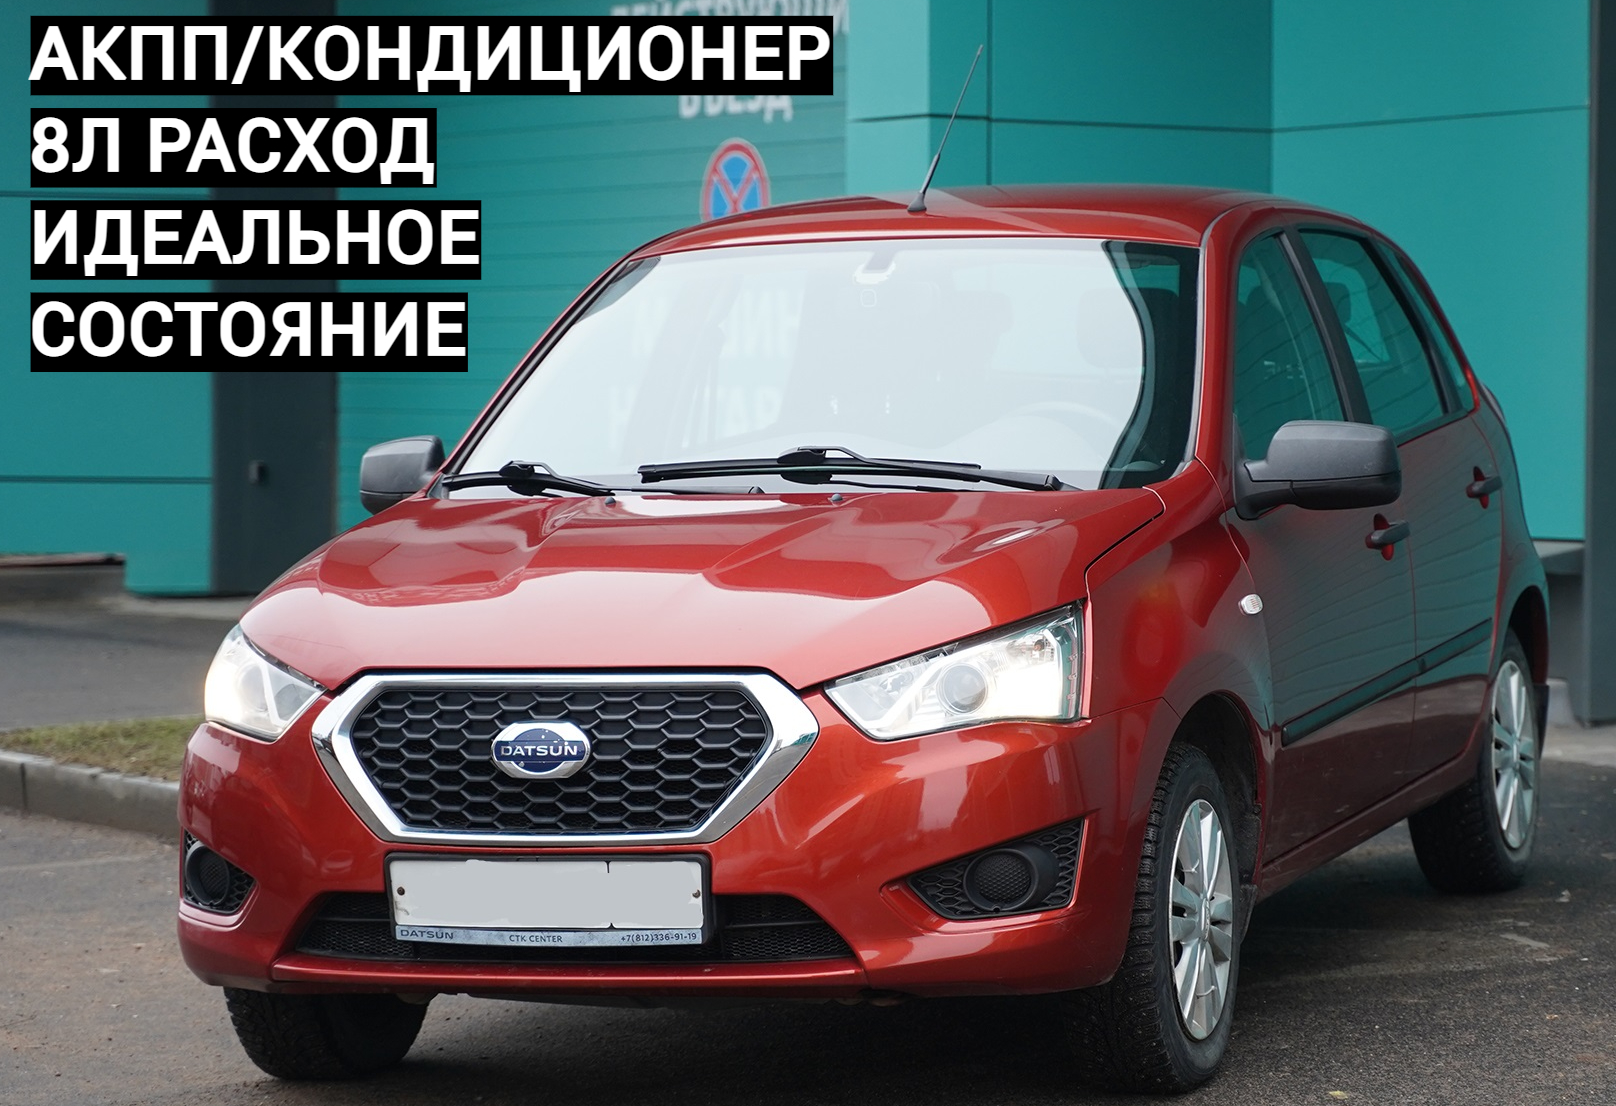 Аренда datsun mi-do эконом класса 2015 года в городе Москва Парнас от 1500 руб./сутки, передний привод, двигатель: бензин, объем 1.6 литров, ОСАГО (Мультидрайв), без водителя, недорого - RentRide